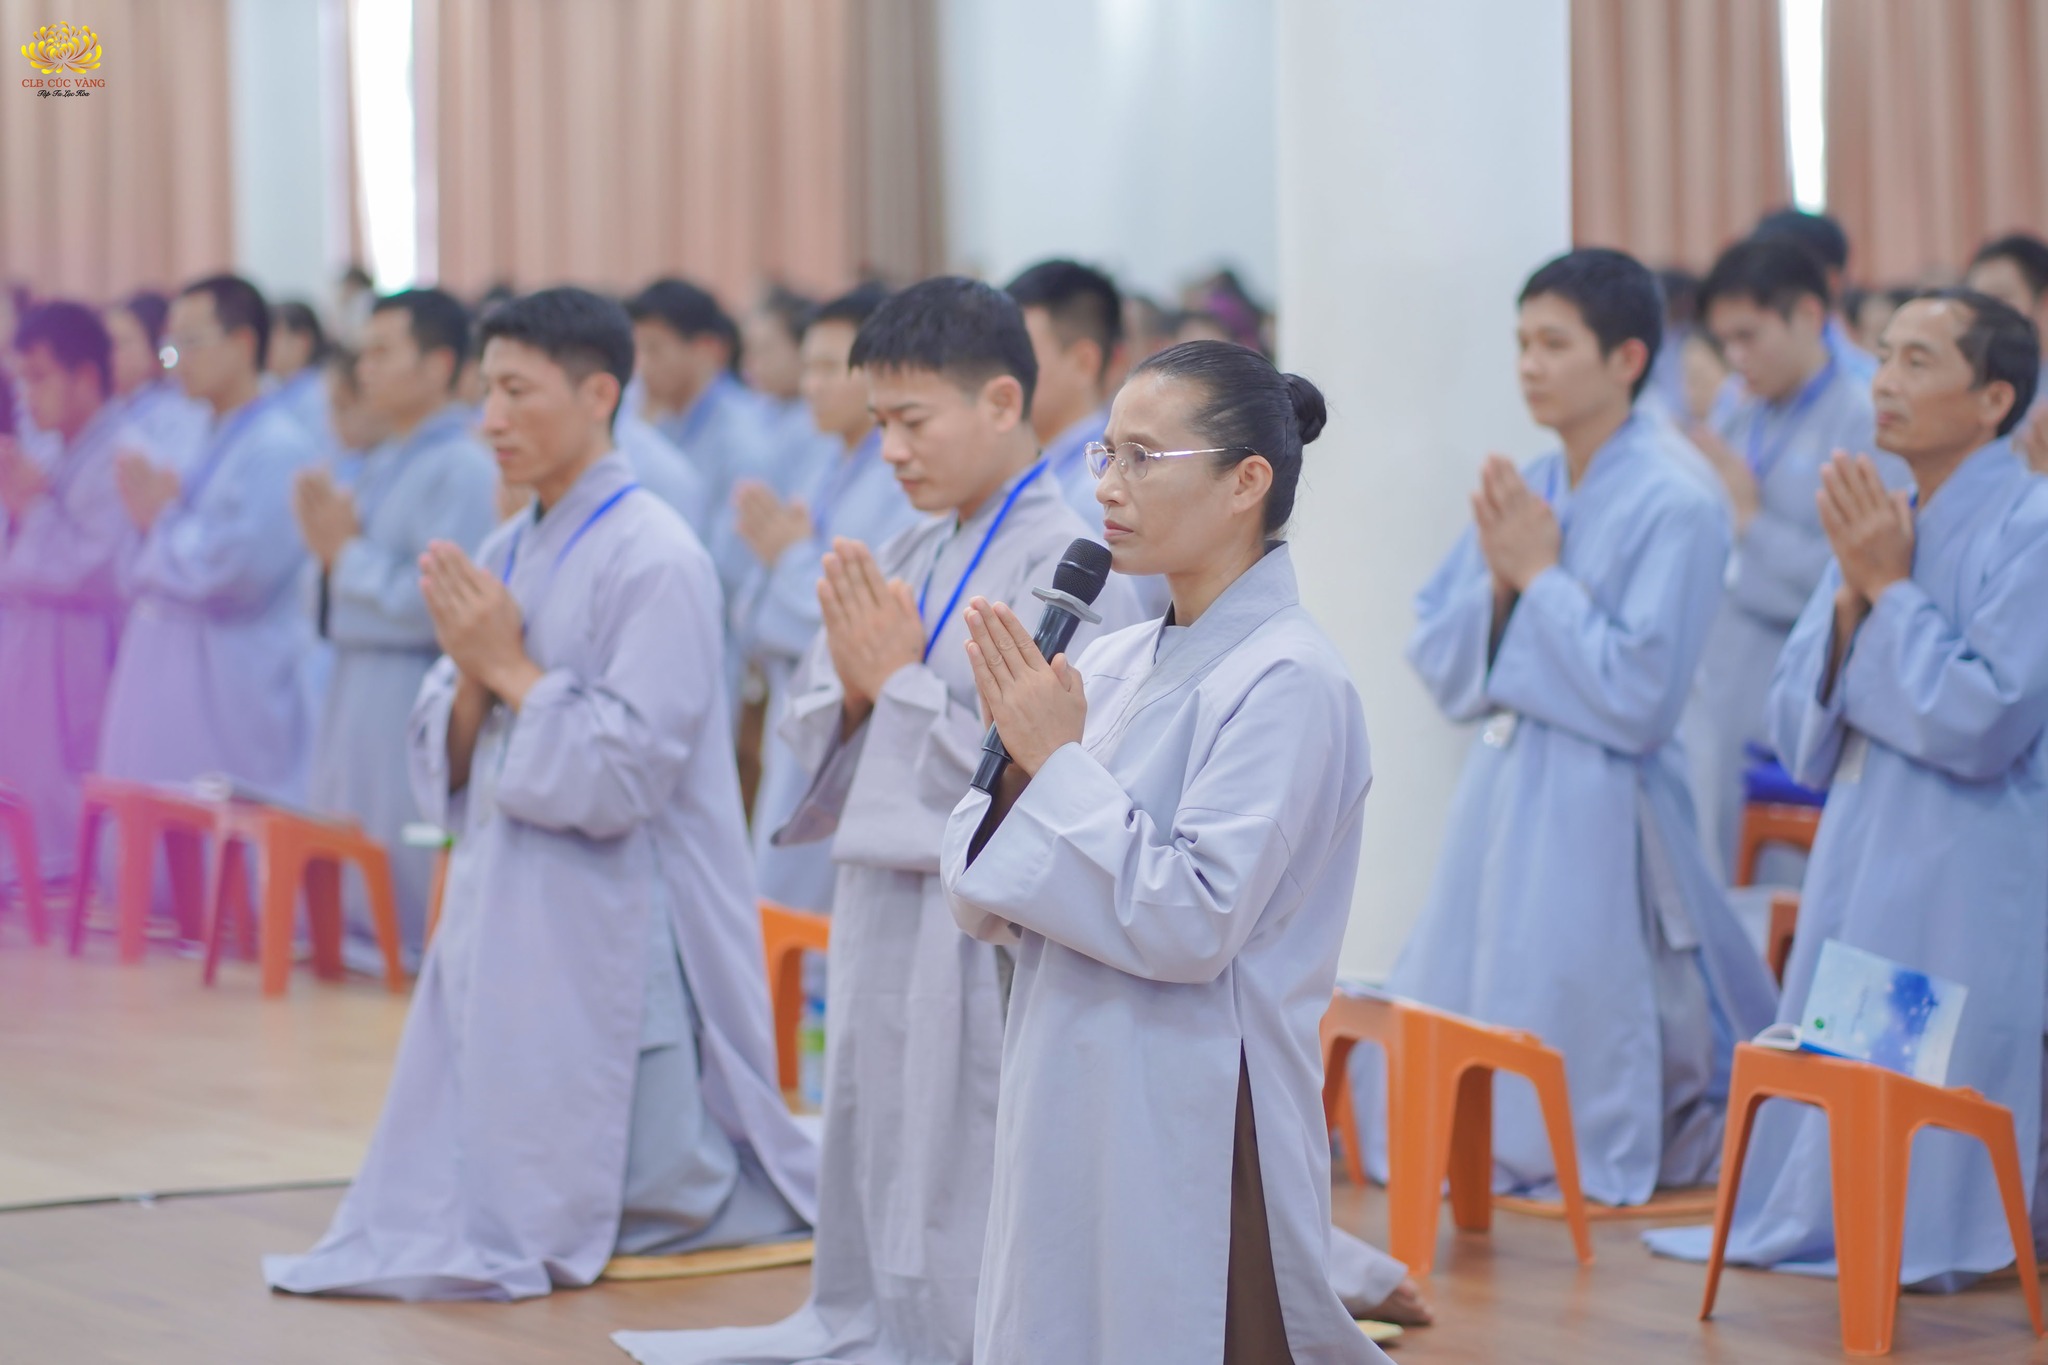 Cô chủ nhiệm Phạm Thị Yến cùng các Phật tử đại diện CLB Cúc Vàng - Tập Tu Lục Hòa đã thành kính đảnh lễ, dâng lời tri ân lên Sư Phụ